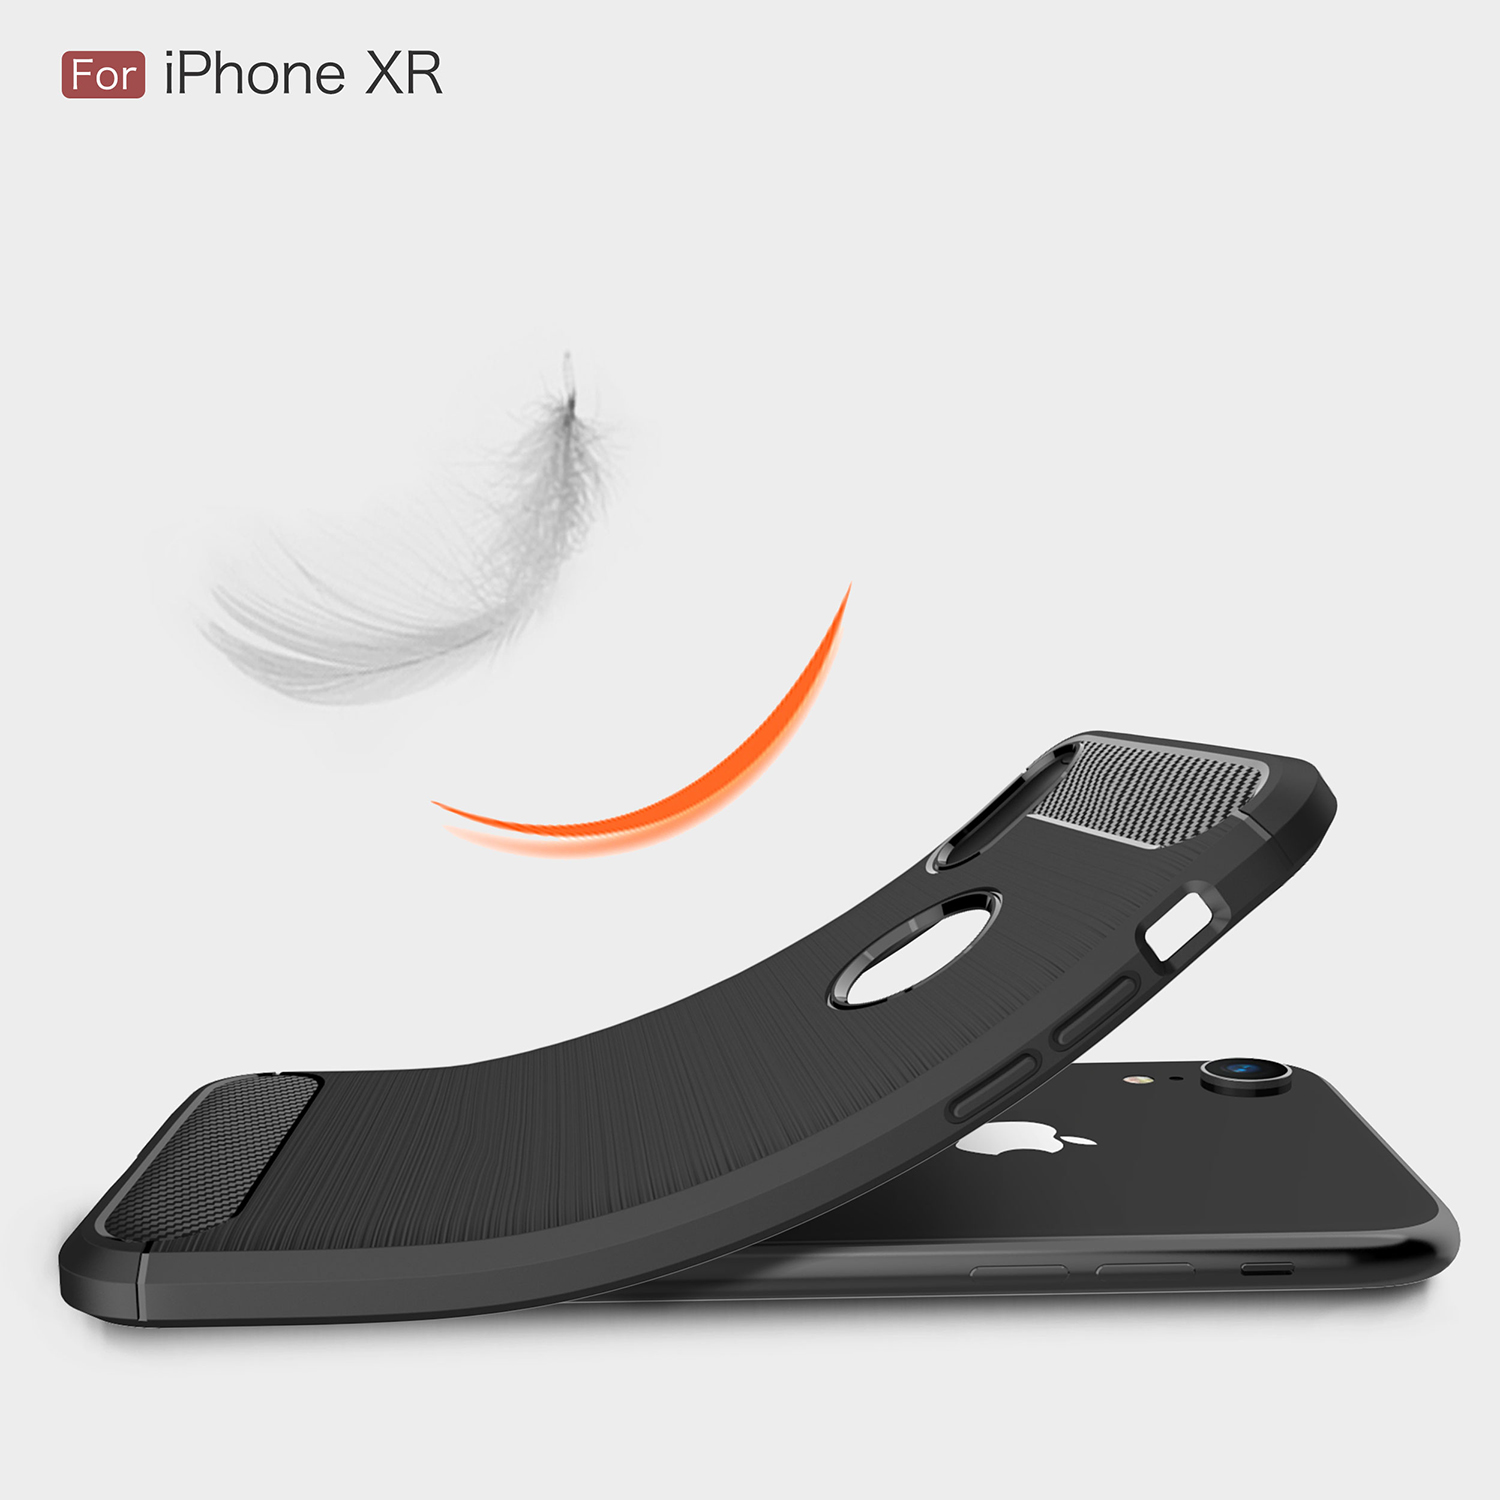 Ốp lưng chống sốc Likgus cho iPhone XR (chuẩn quân đội, chống va đập, chống vân tay) - Hàng chính hãng